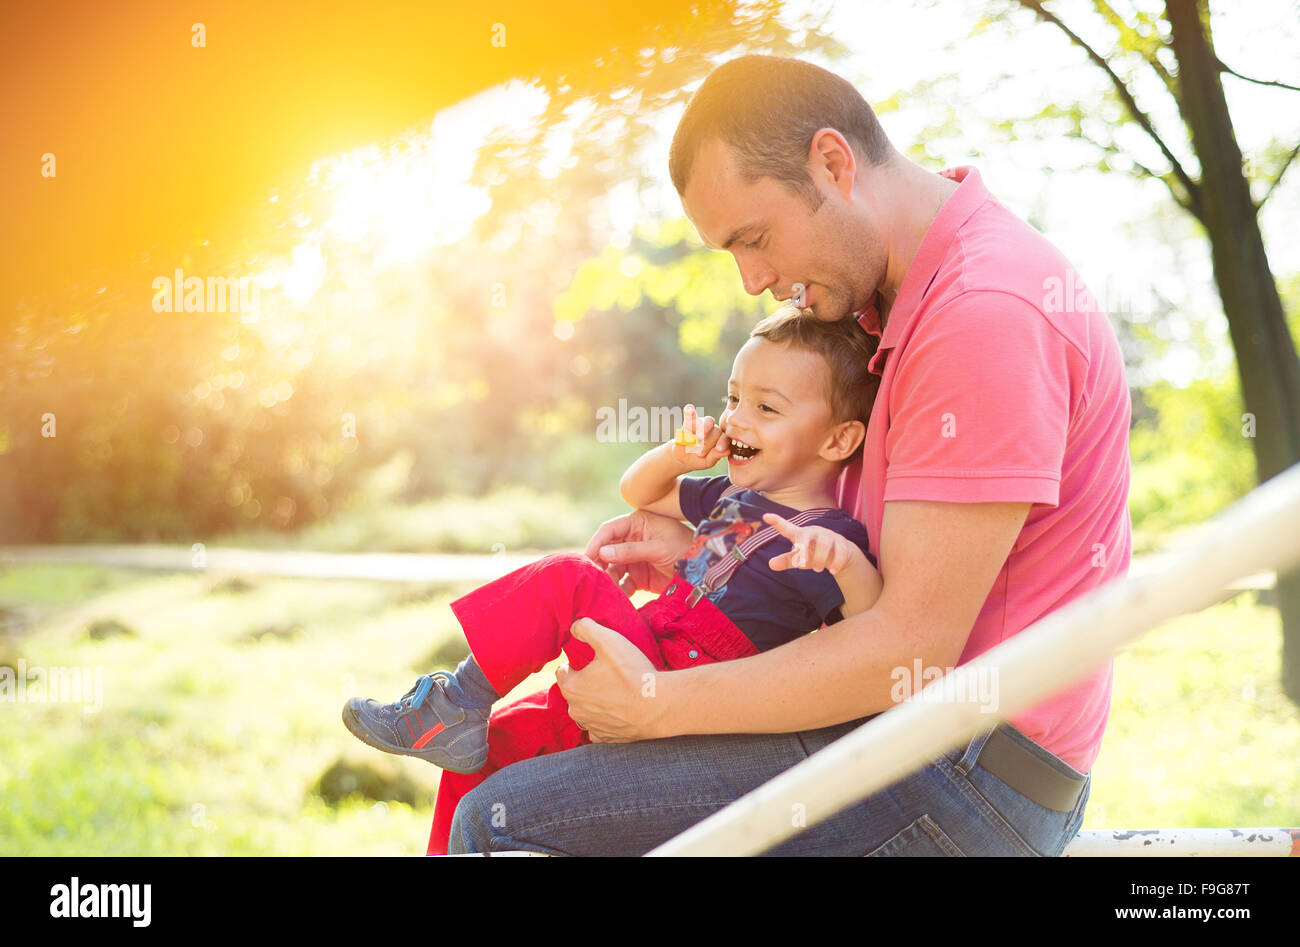 Glückliche junge Vater mit seinem Sohn auf einem Kinderspielplatz Stockfoto